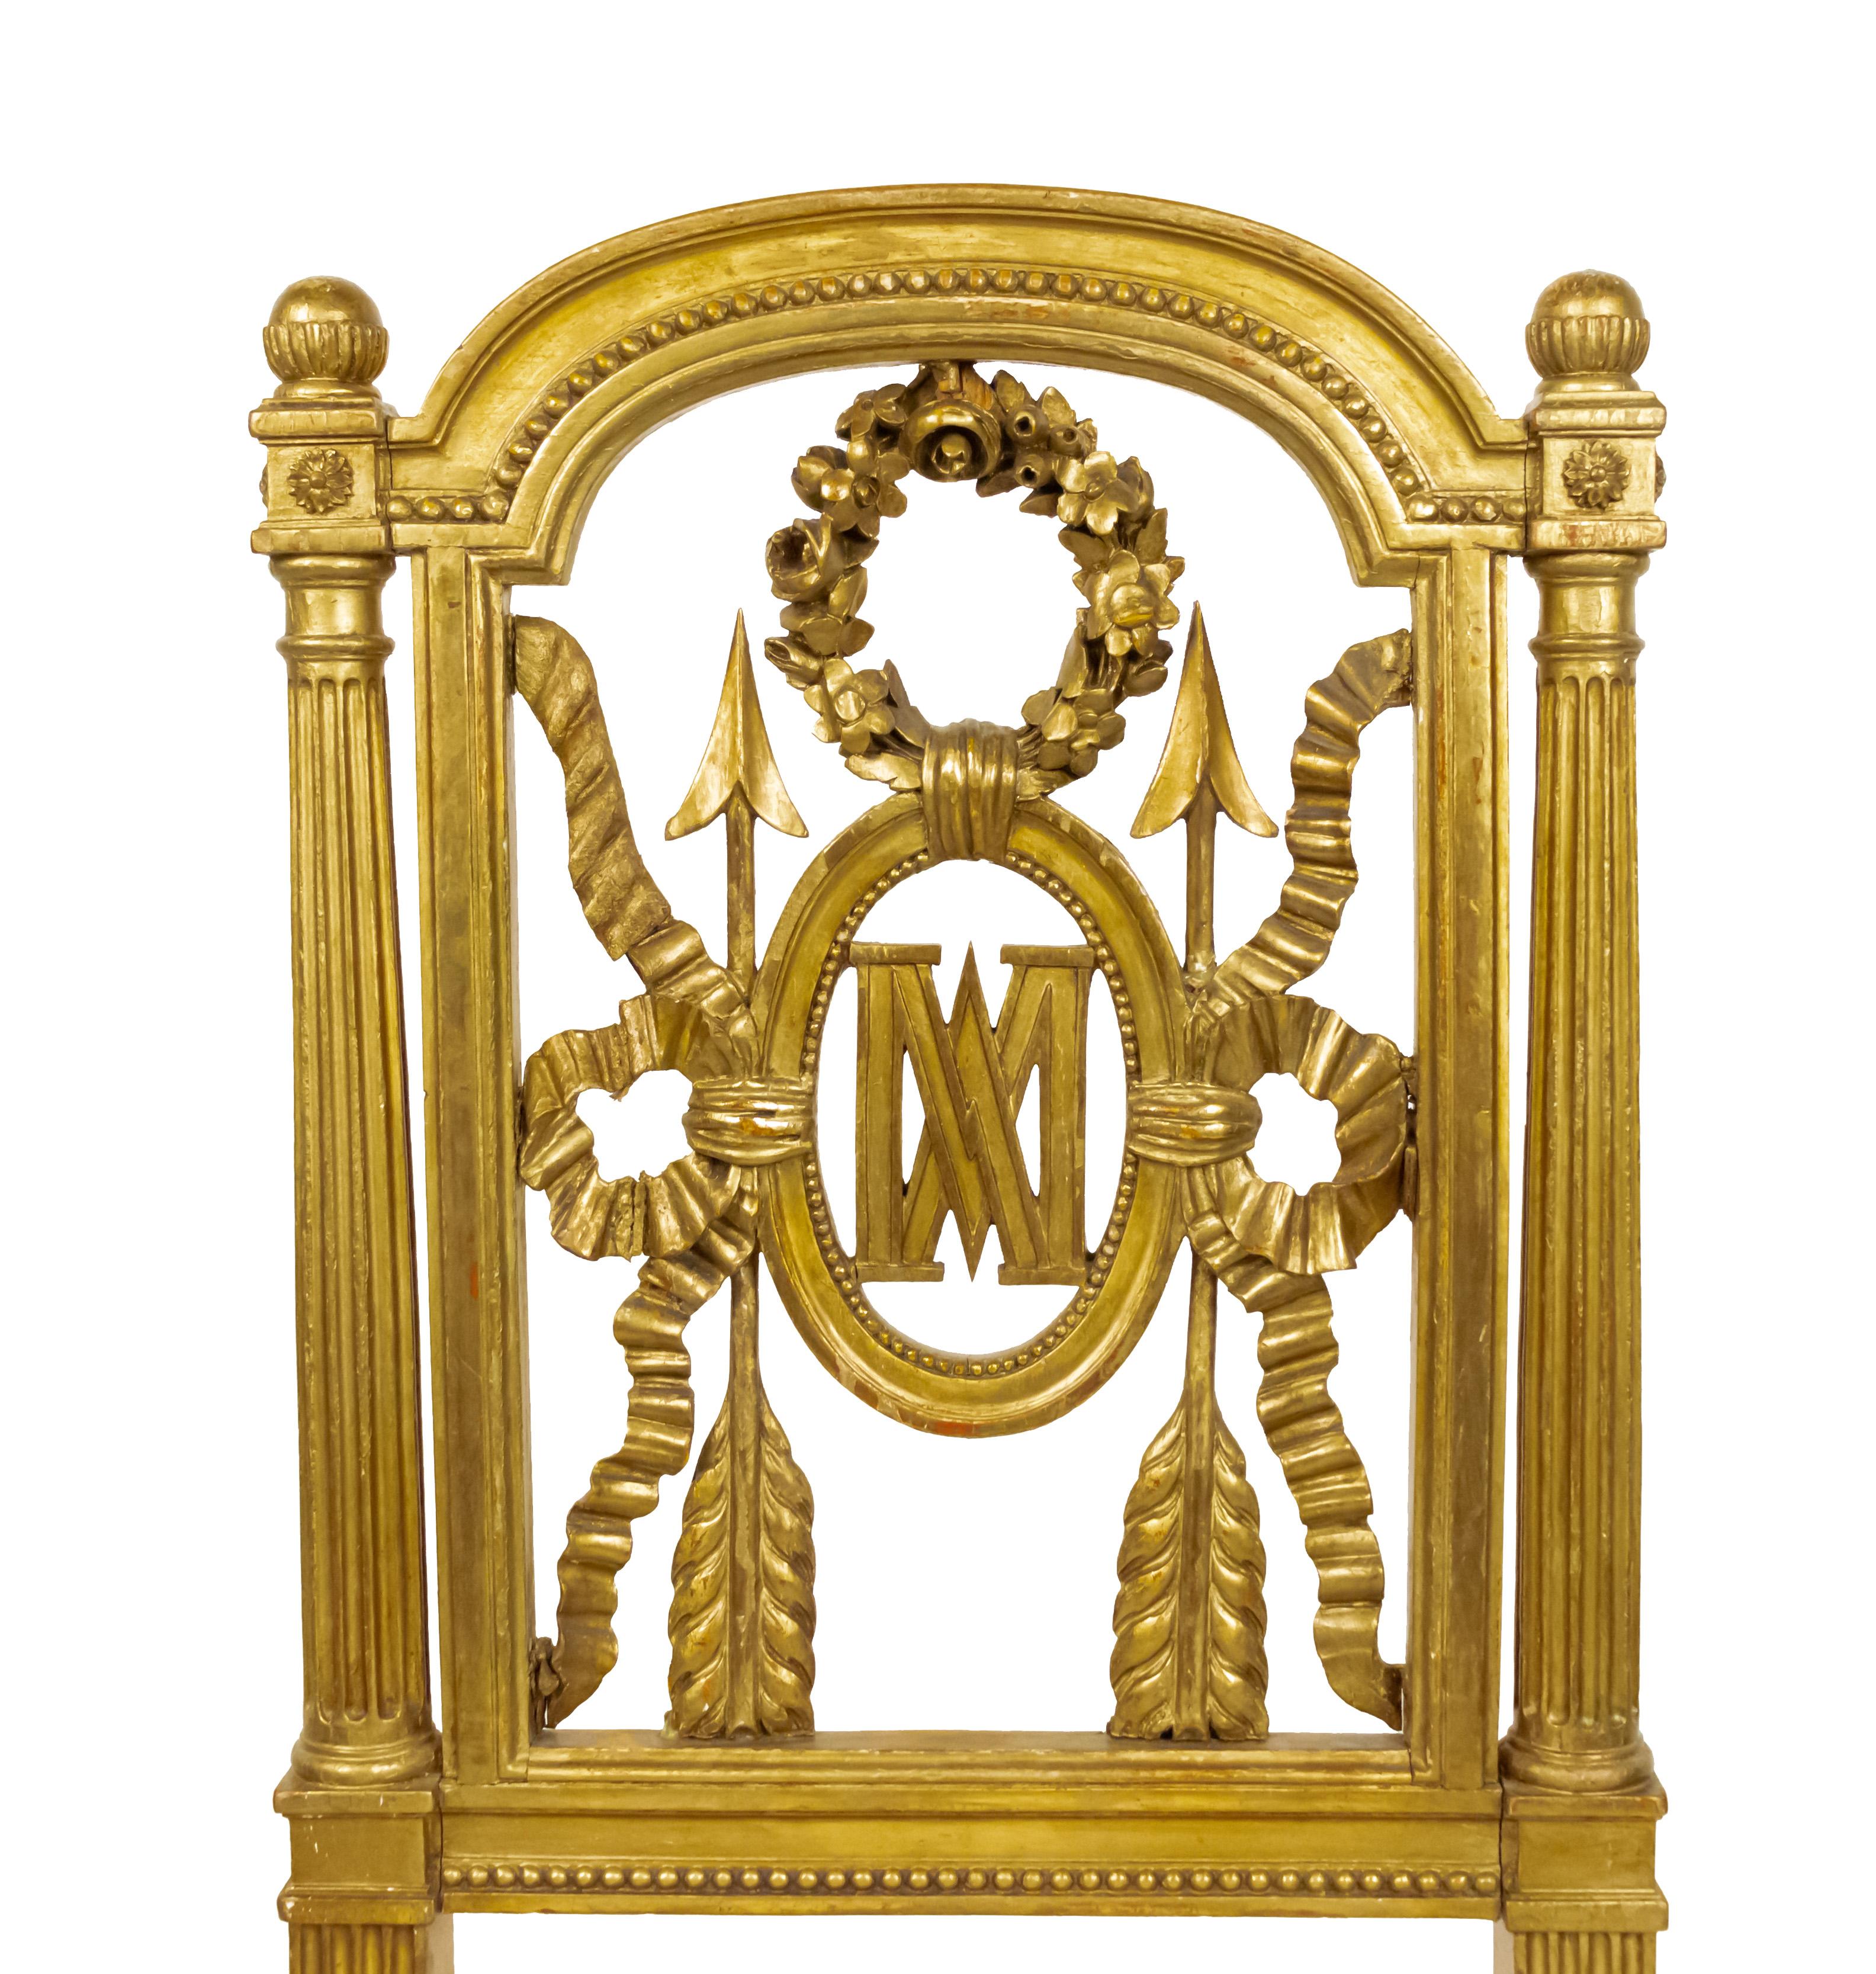 Zwei vergoldete französische Beistellstühle im Louis XVI-Stil (19. Jh.) mit geschnitzter Rückenlehne mit Kranz und Pfeil sowie den Initialen MA (Marie Antoinette) und zeitgenössischer, weißer, mehrfarbiger, geometrischer Polsterung.
 